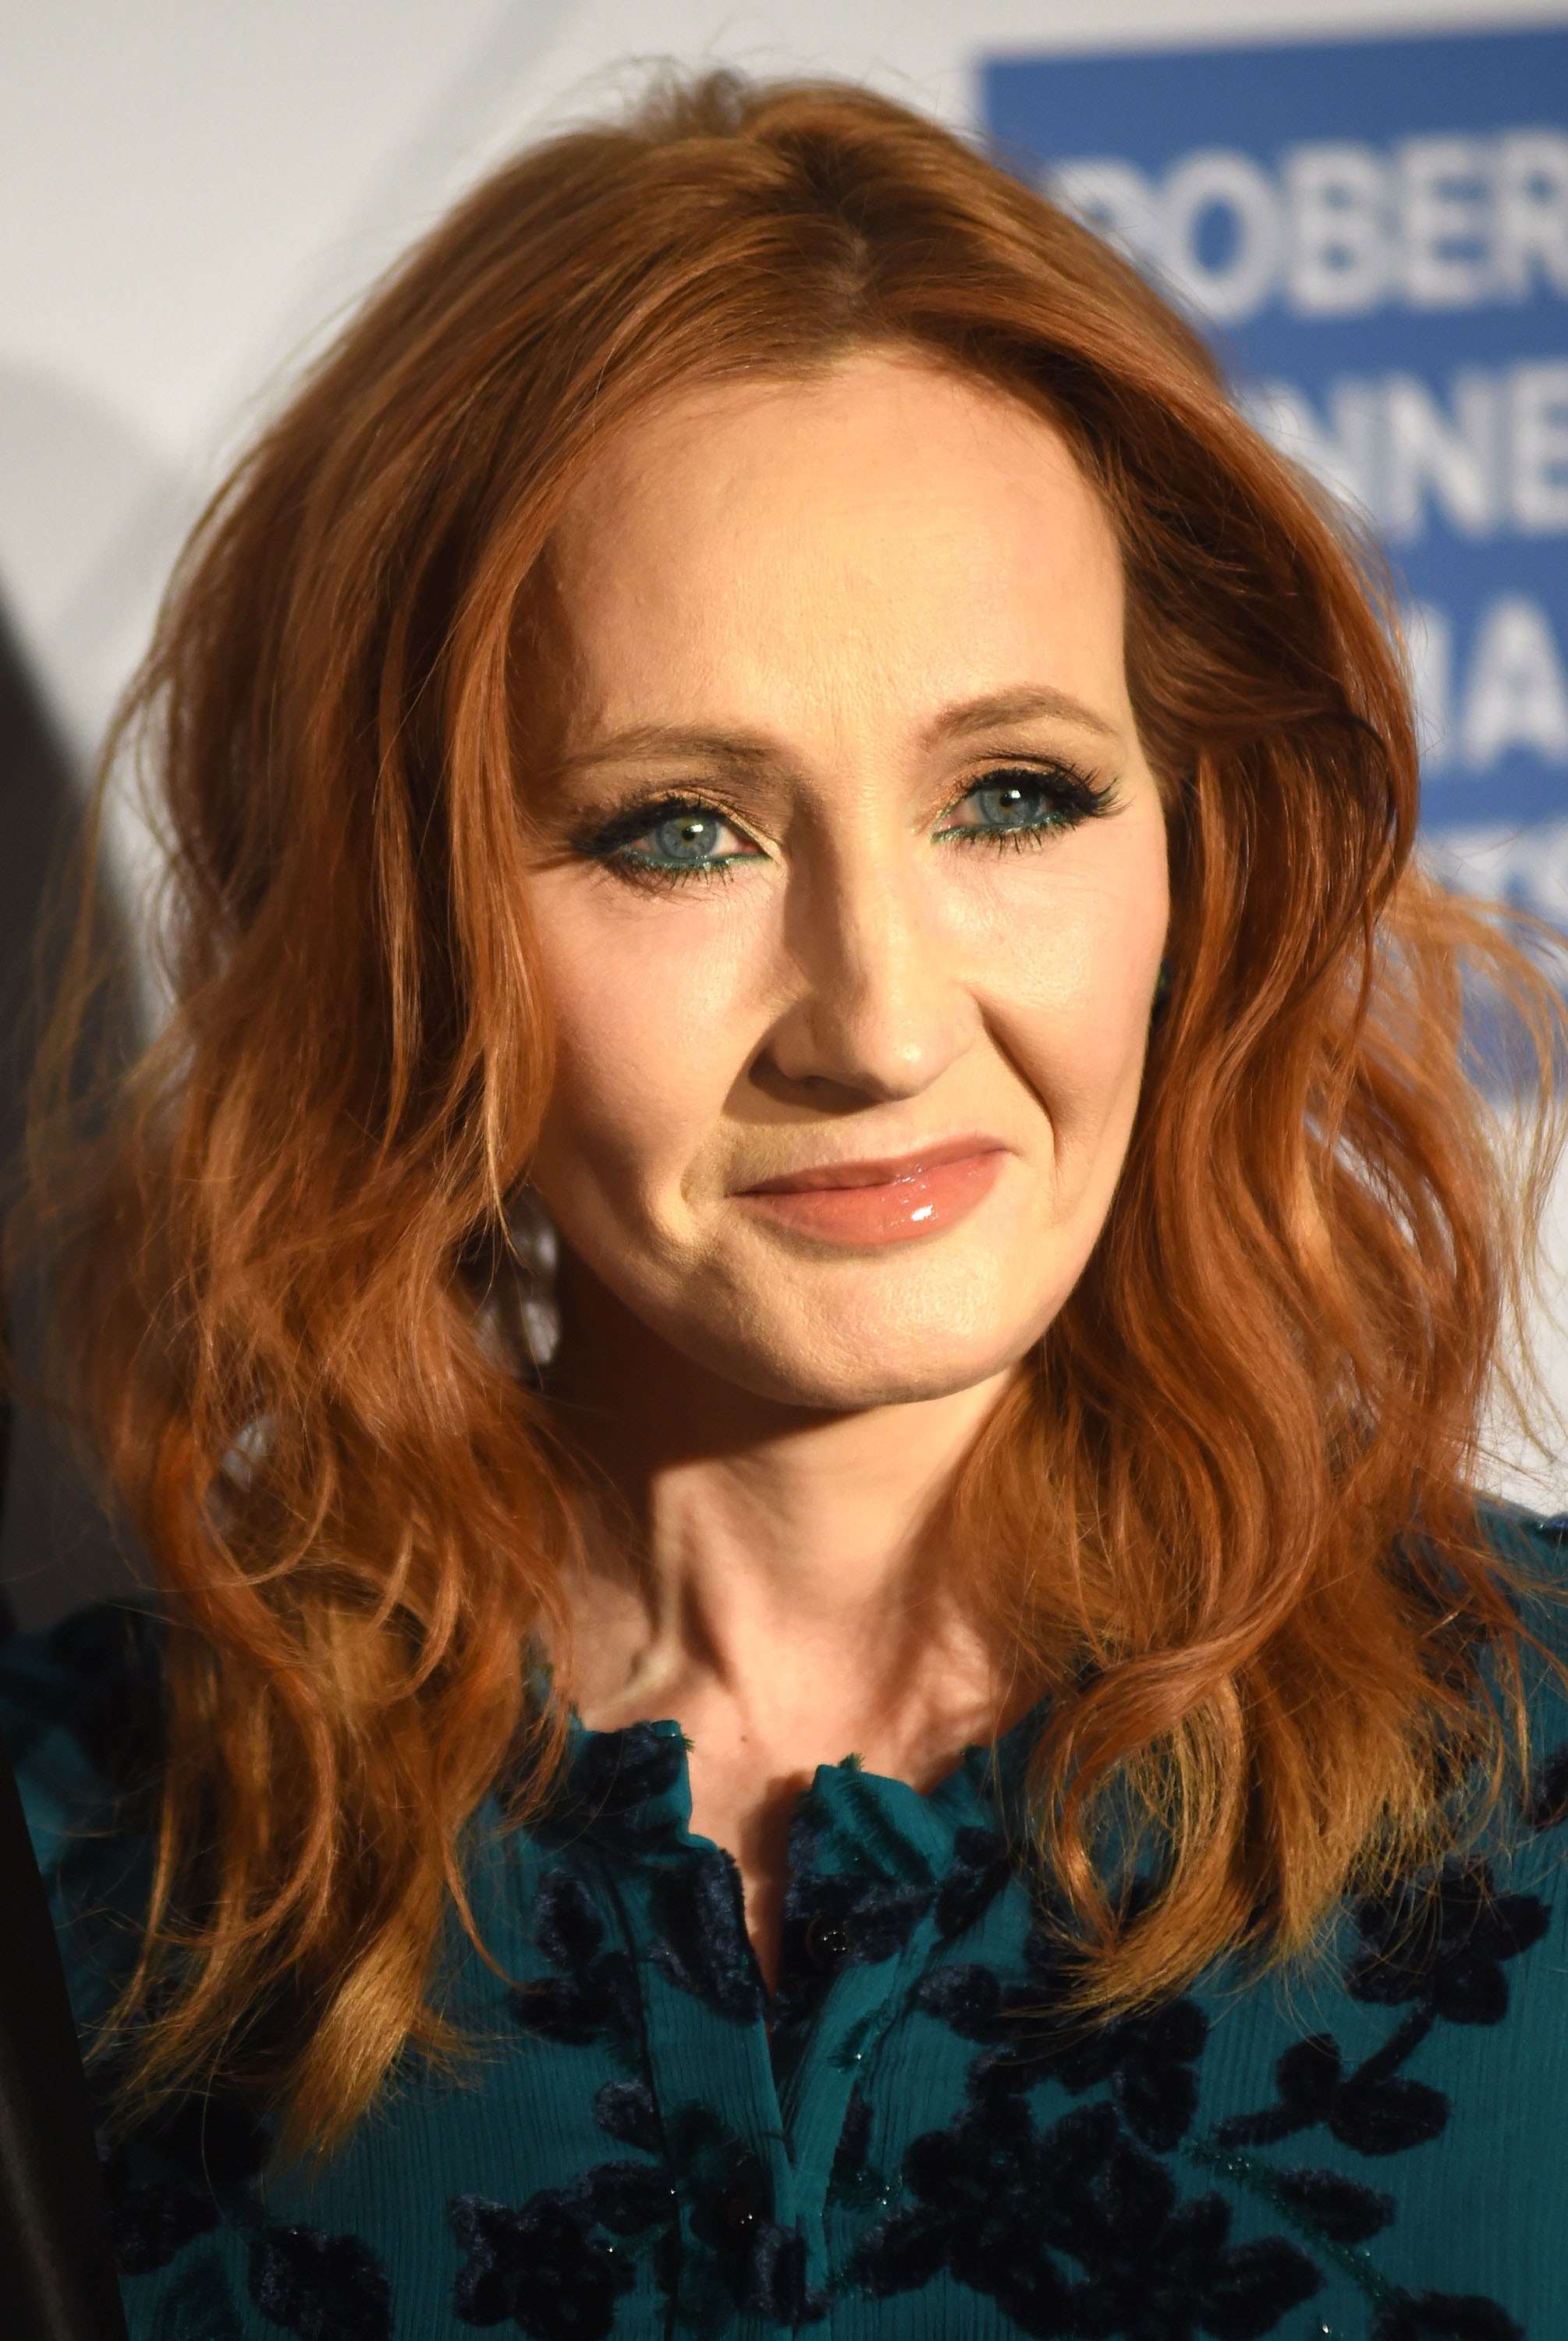 J.K. Rowling, al momento di pubblicare il primo libro di Harry Potter, su richiesta dell'editore accetto di firmarsi con le iniziali anziché col suo nome vero: Joanne Rowling, proprio per far credere di essere un uomo e avere maggiori possibilità di vendita